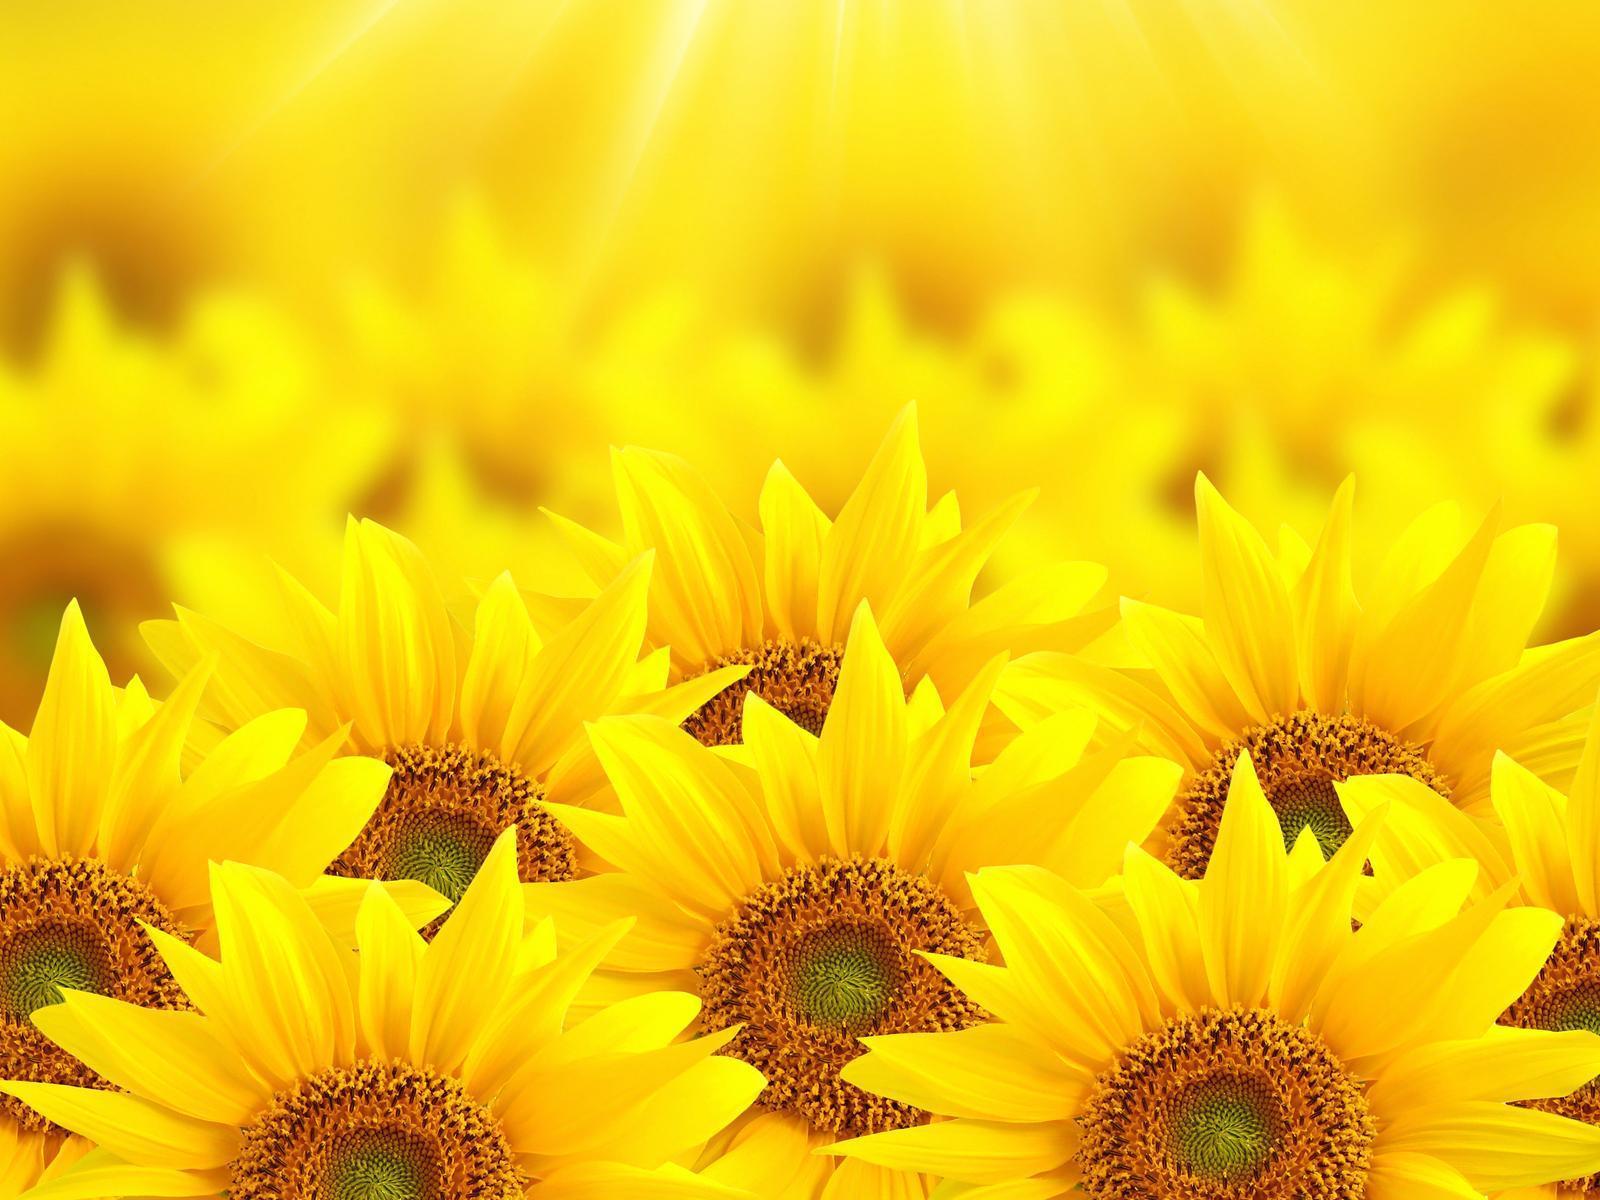 Nếu bạn thích hoa hướng dương, hãy xem những bức ảnh chụp hoa này. Ảnh hướng dương có thể hiển thị cảm xúc và sự tươi vui của hoa này, giúp bạn cảm thấy thư giãn và hạnh phúc.